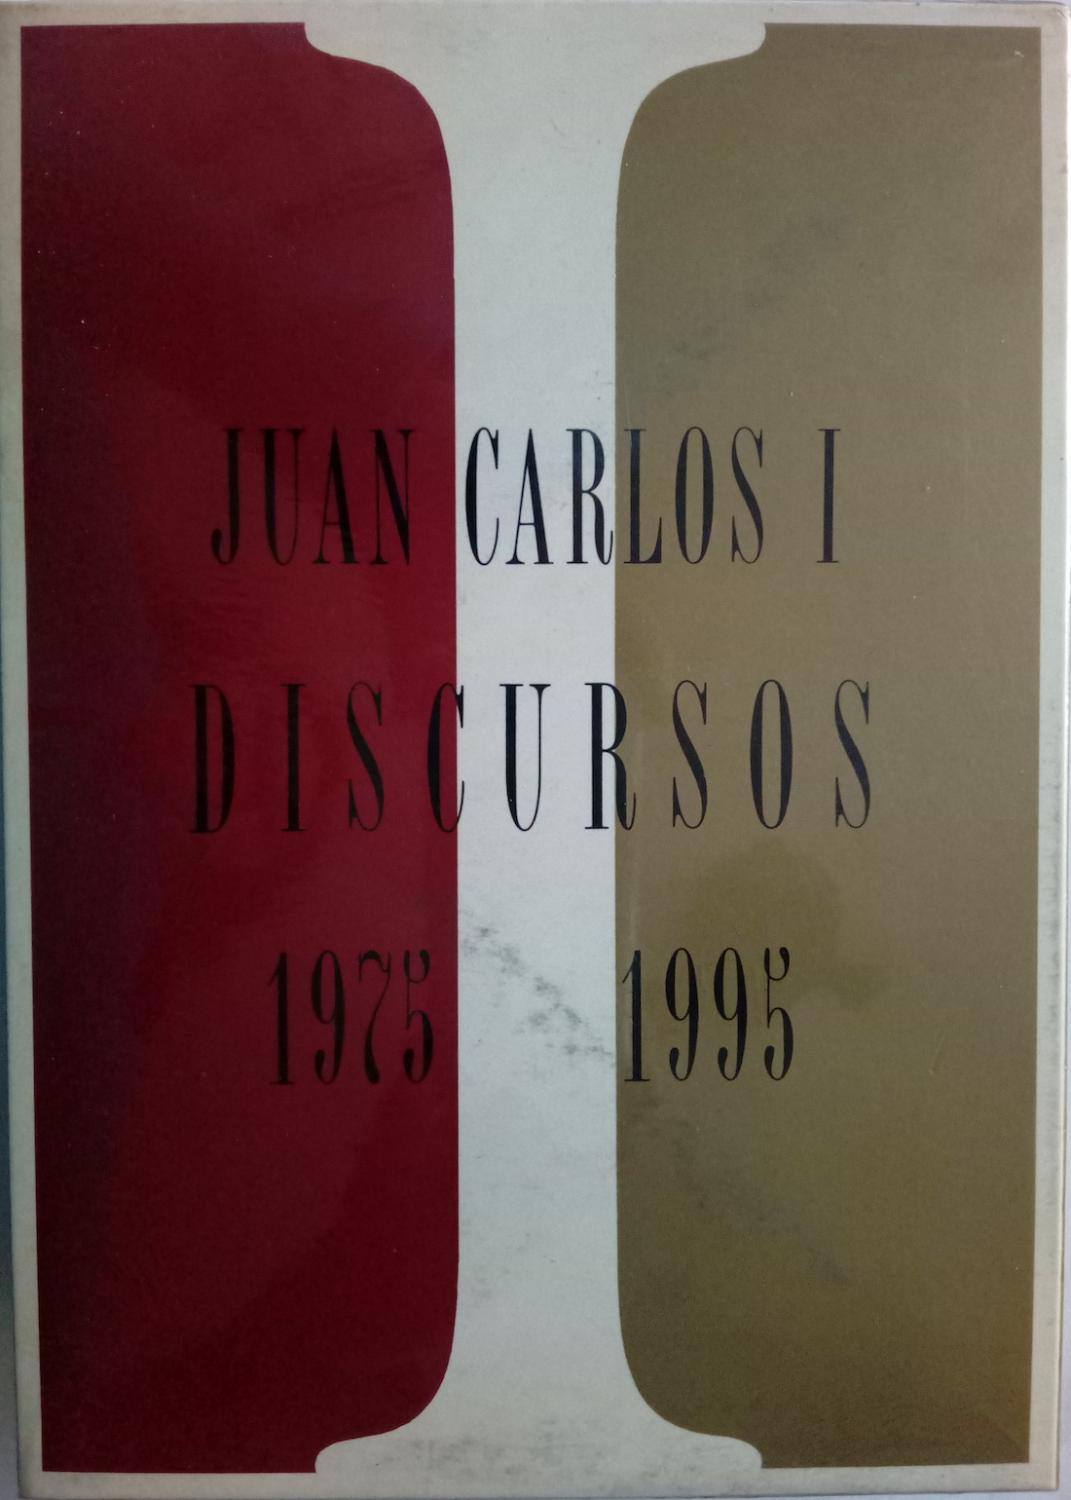 Juan Carlos I. Discursos 1975-1995